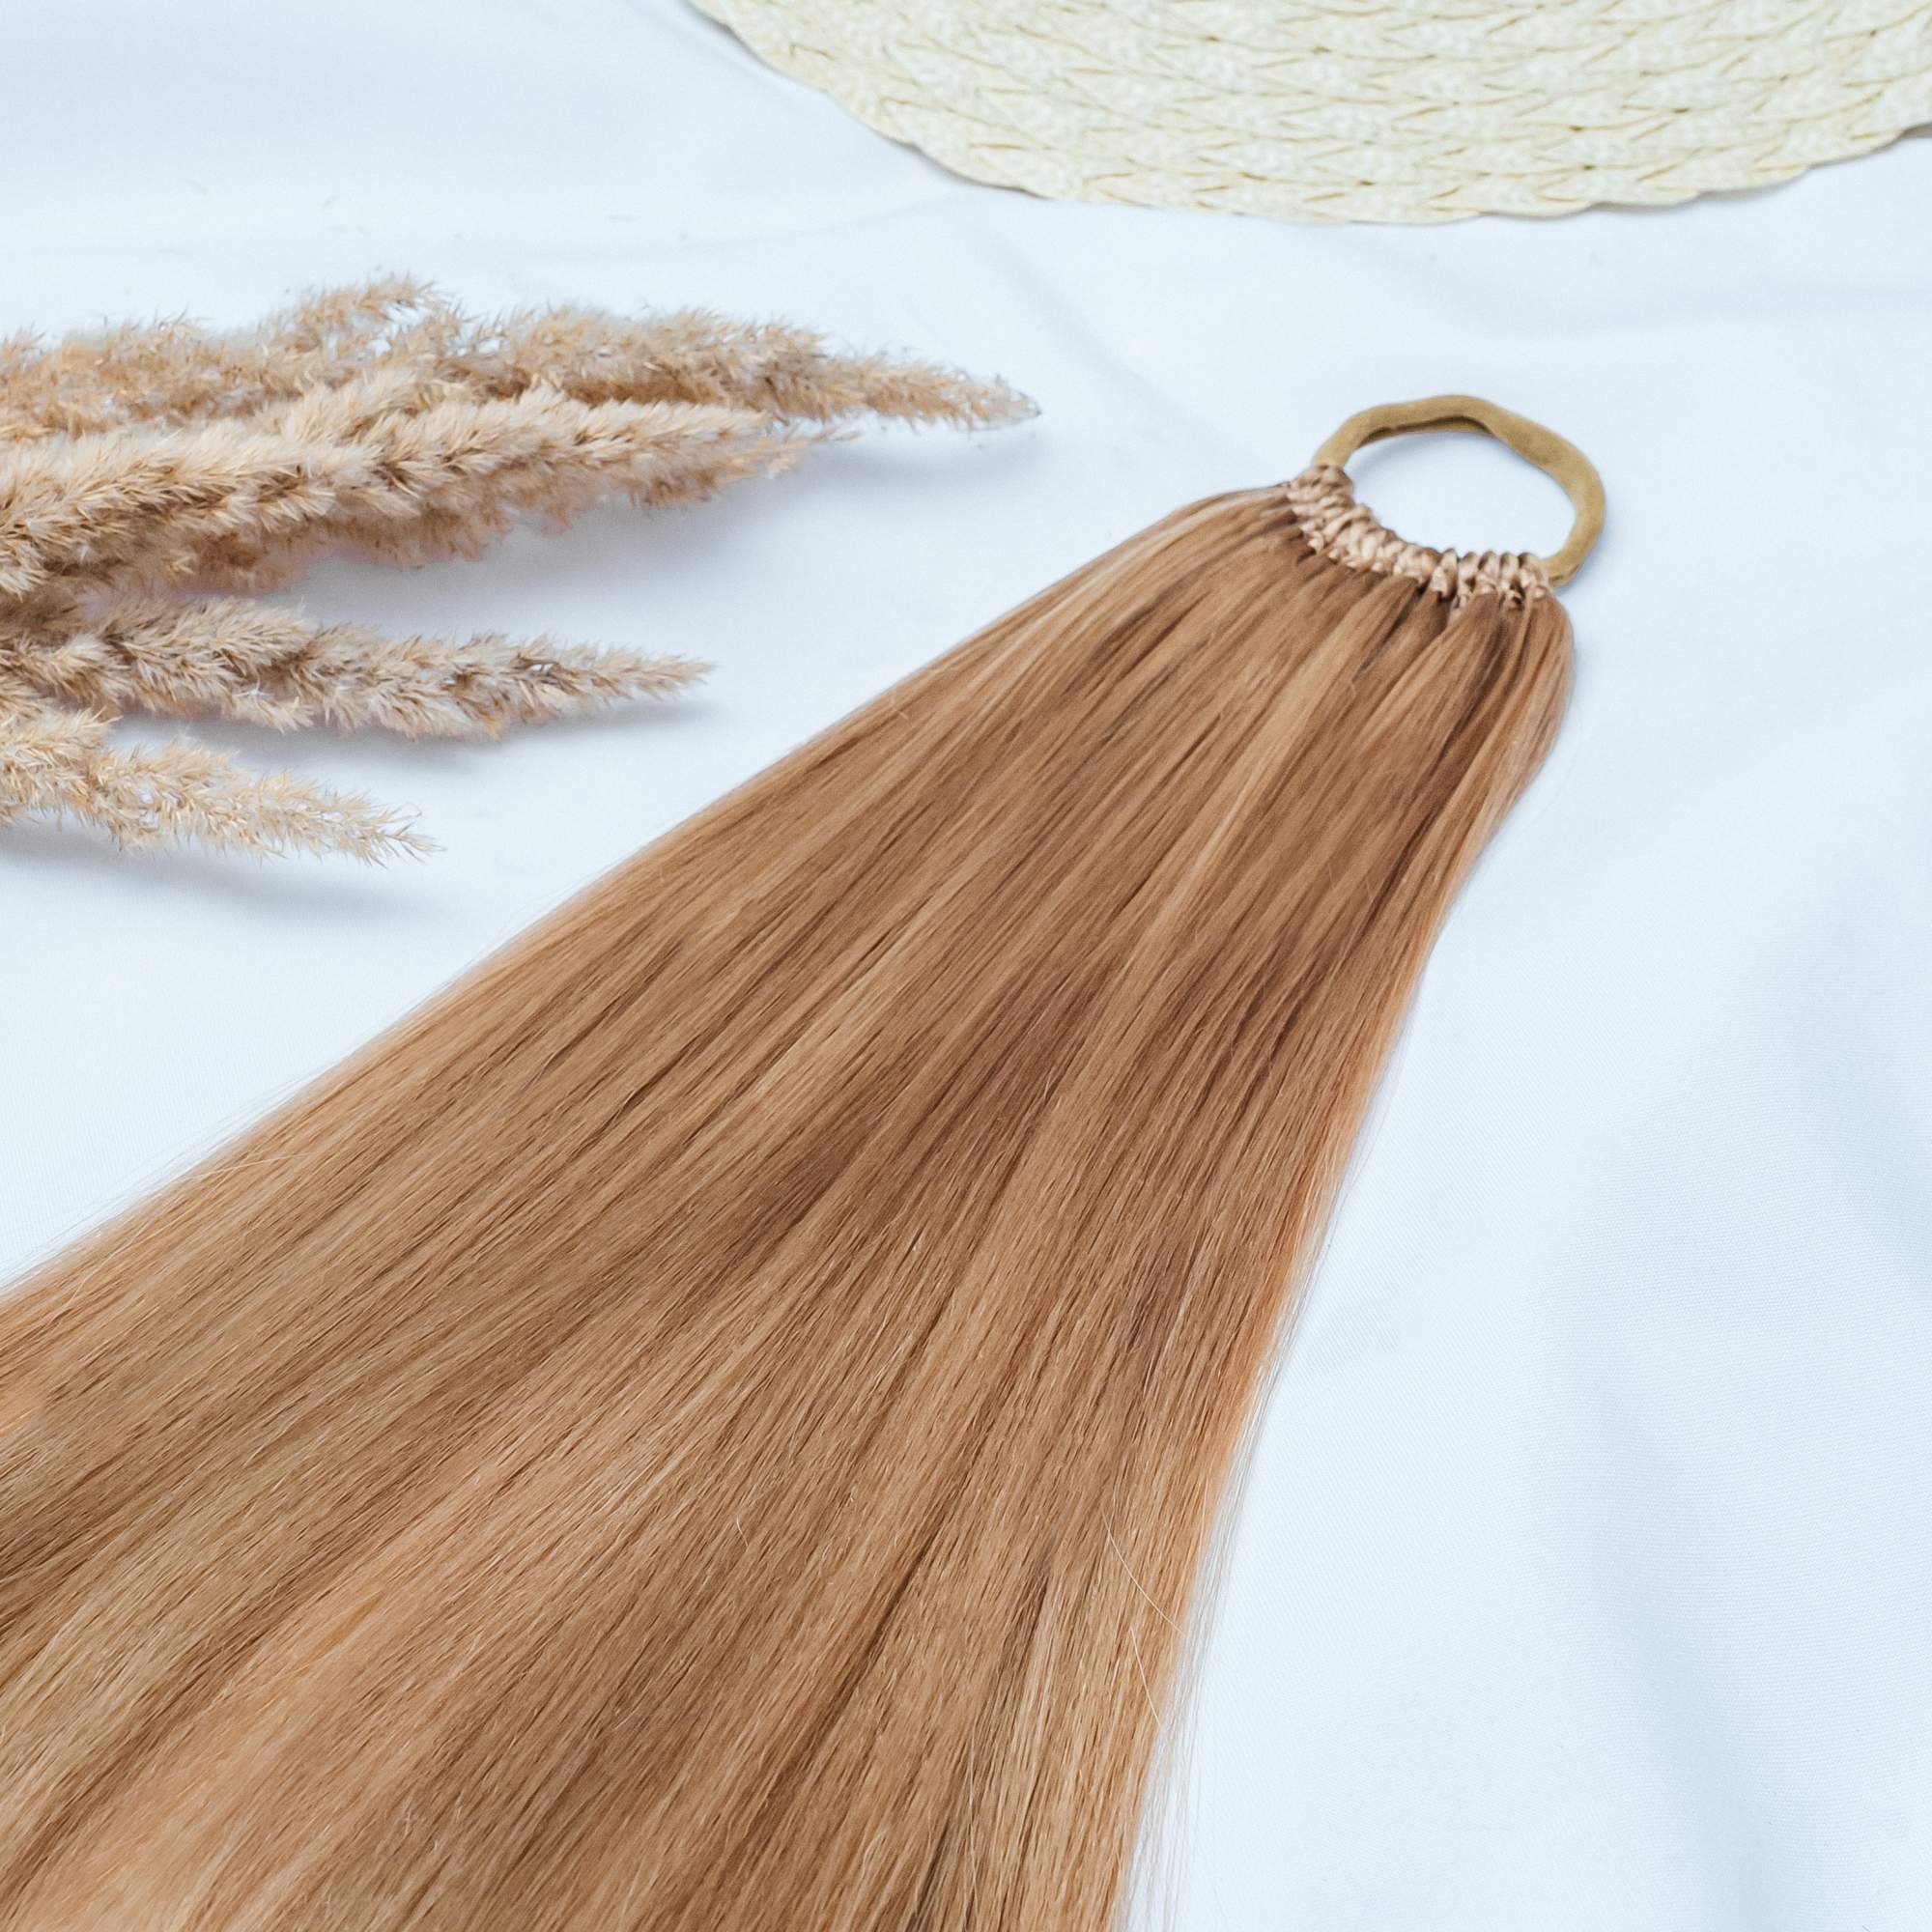 Хвост на резинке Braid Art Project длина 70 см светло-русый 130г 1шт 15 7 дюймовый волнистый синтетический рост волос хвост светлый хвост хвост шиньон